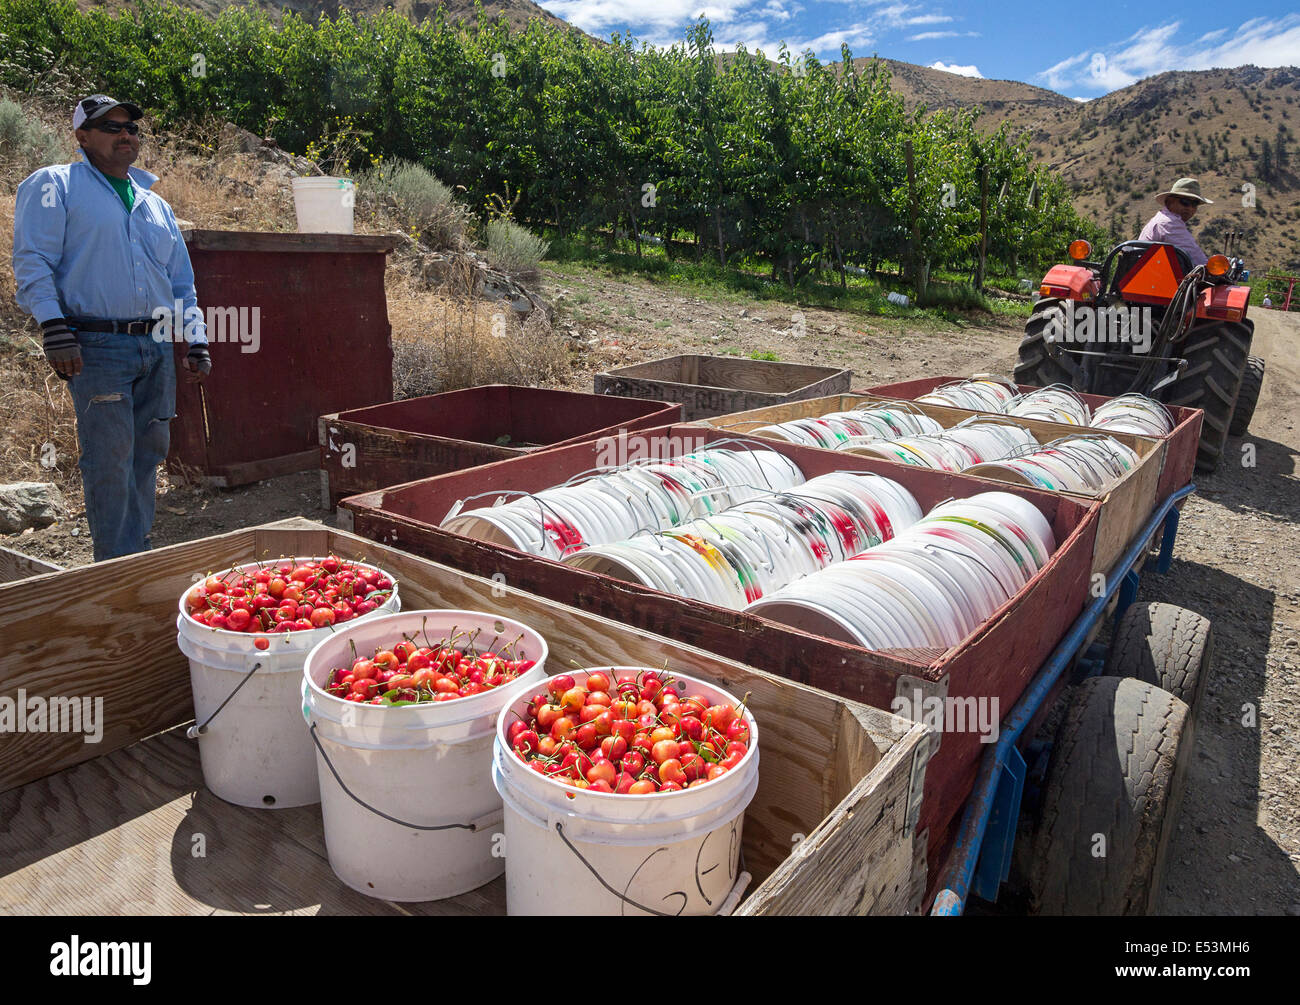 Frisch gepflückt Orondo Ruby Kirschen in Eimern auf G & C Farmen außerhalb Wenatchee, WA, USA. Stockfoto